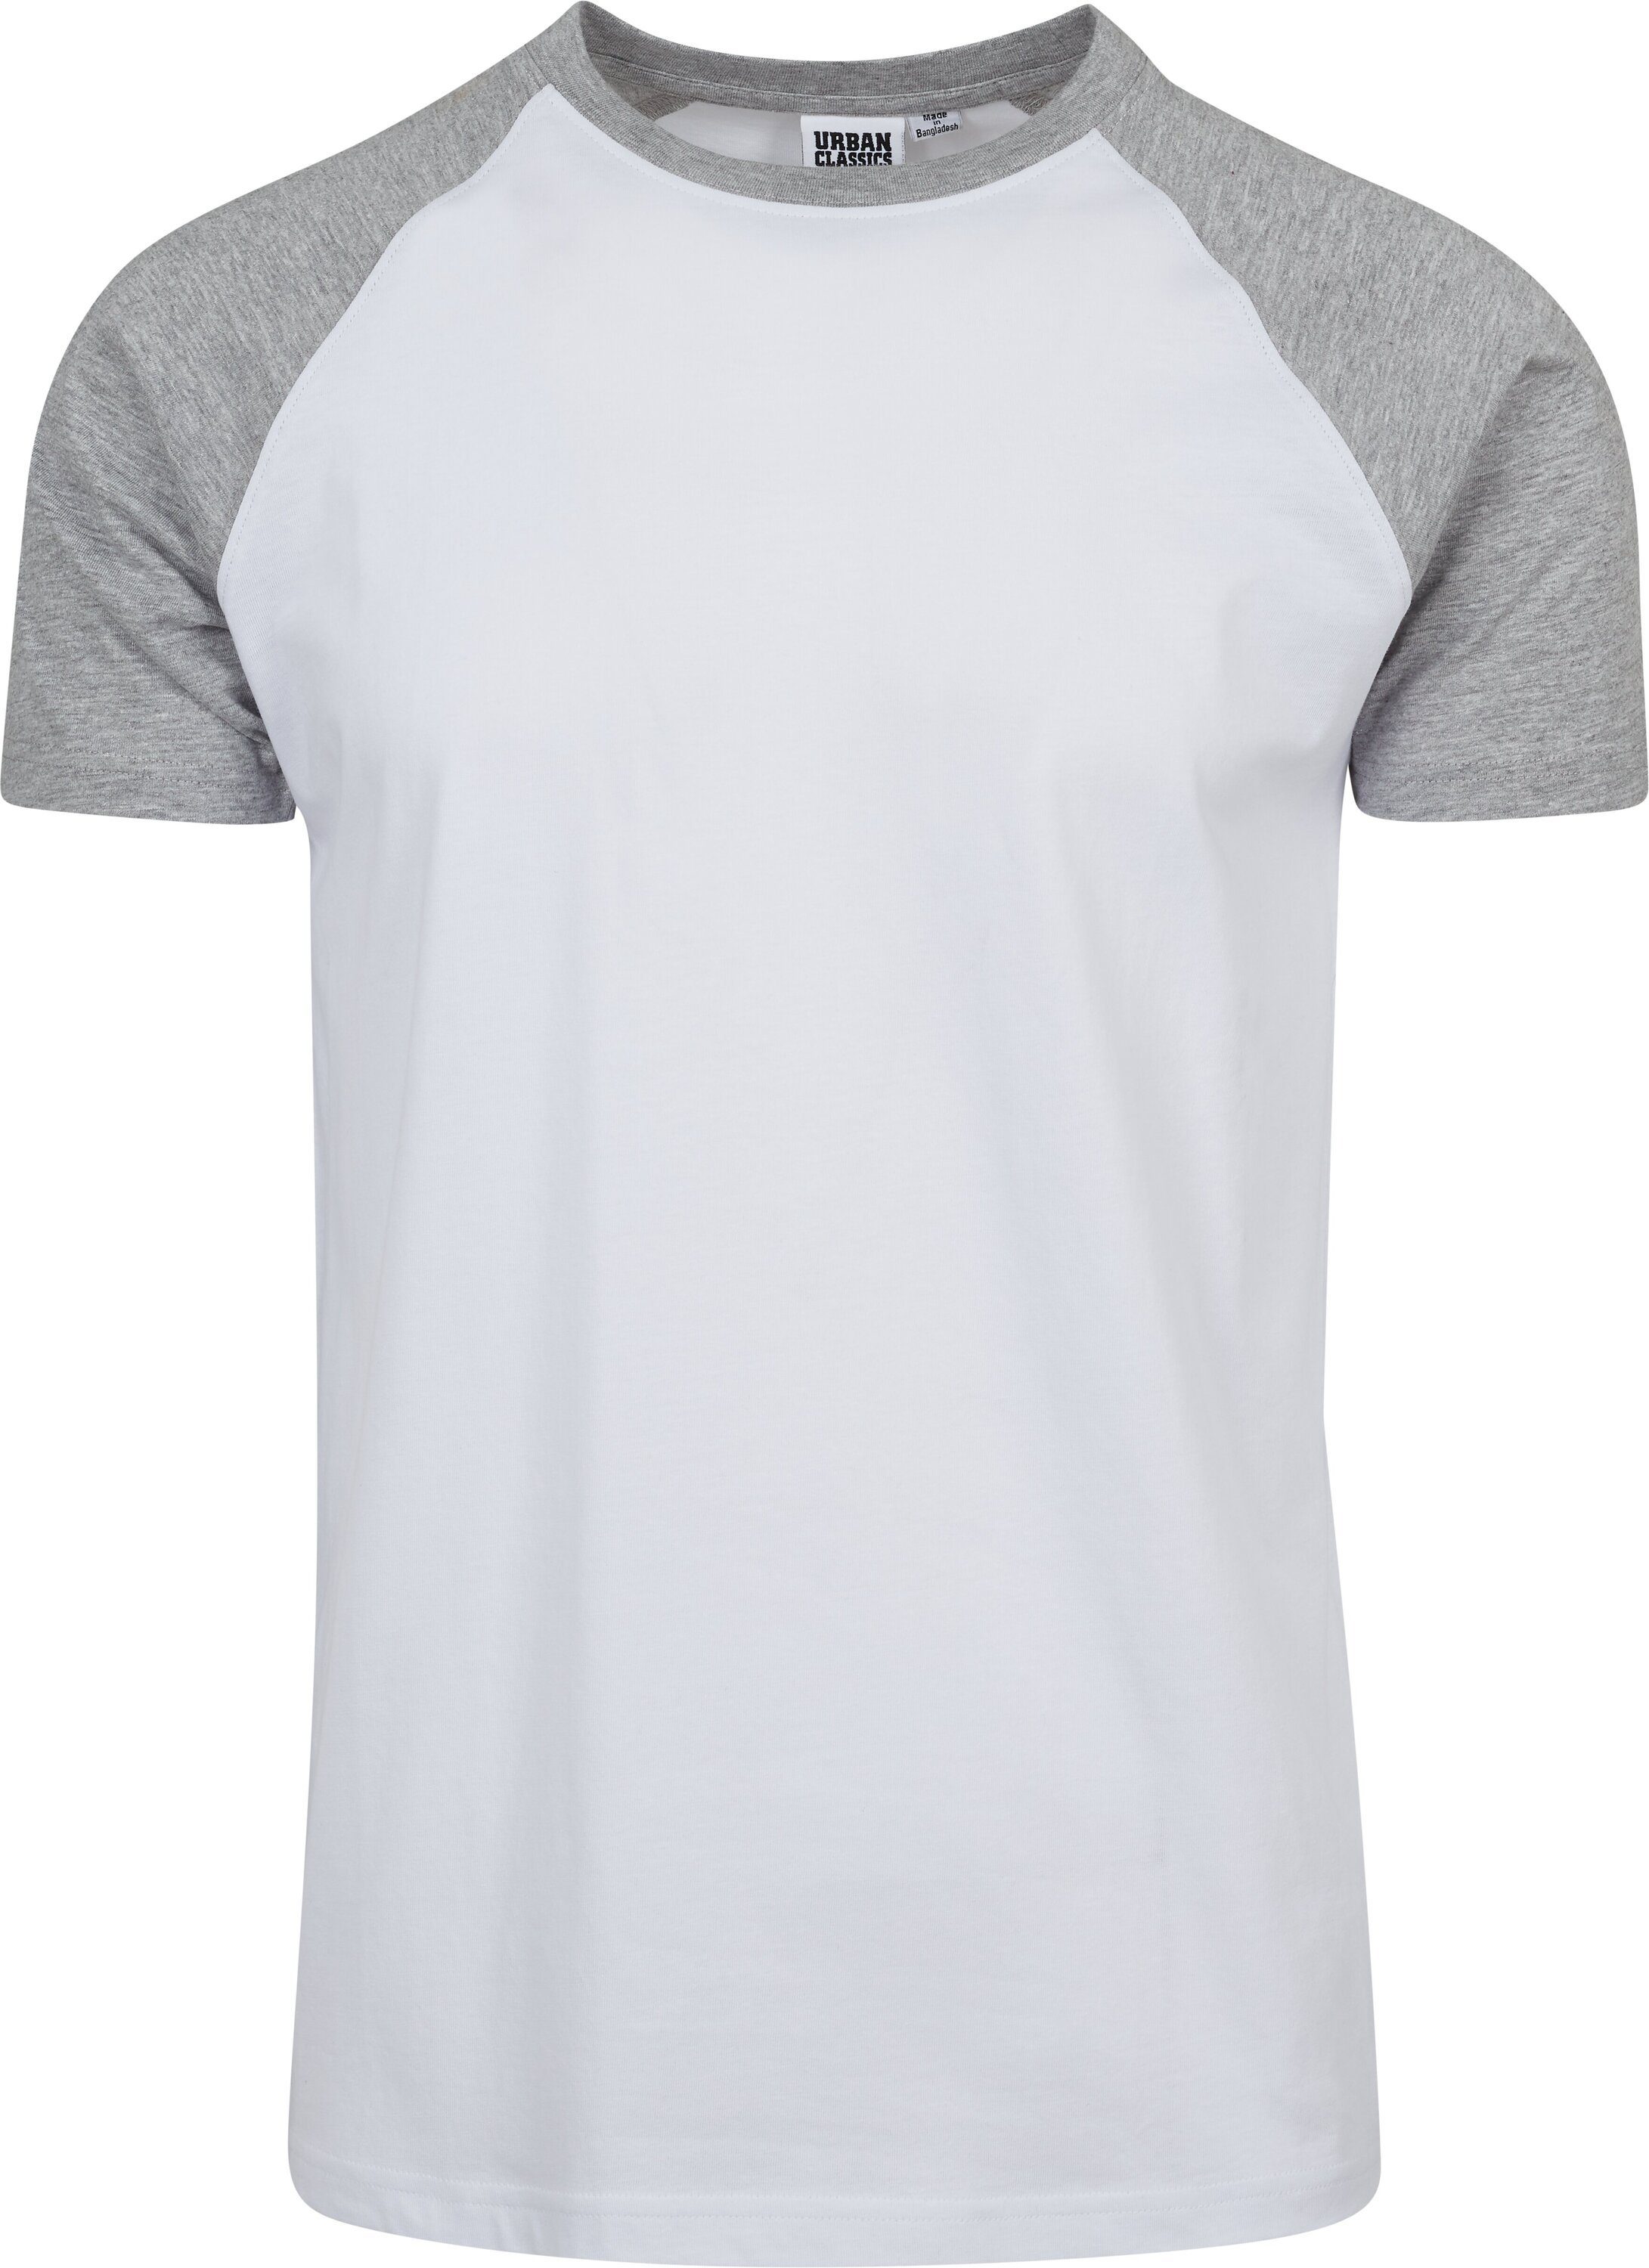 URBAN CLASSICS T-Shirt Herren Raglan Contrast Tee (1-tlg),  Rundhalsausschnitt rundet den lässigen, sportlichen Look ab